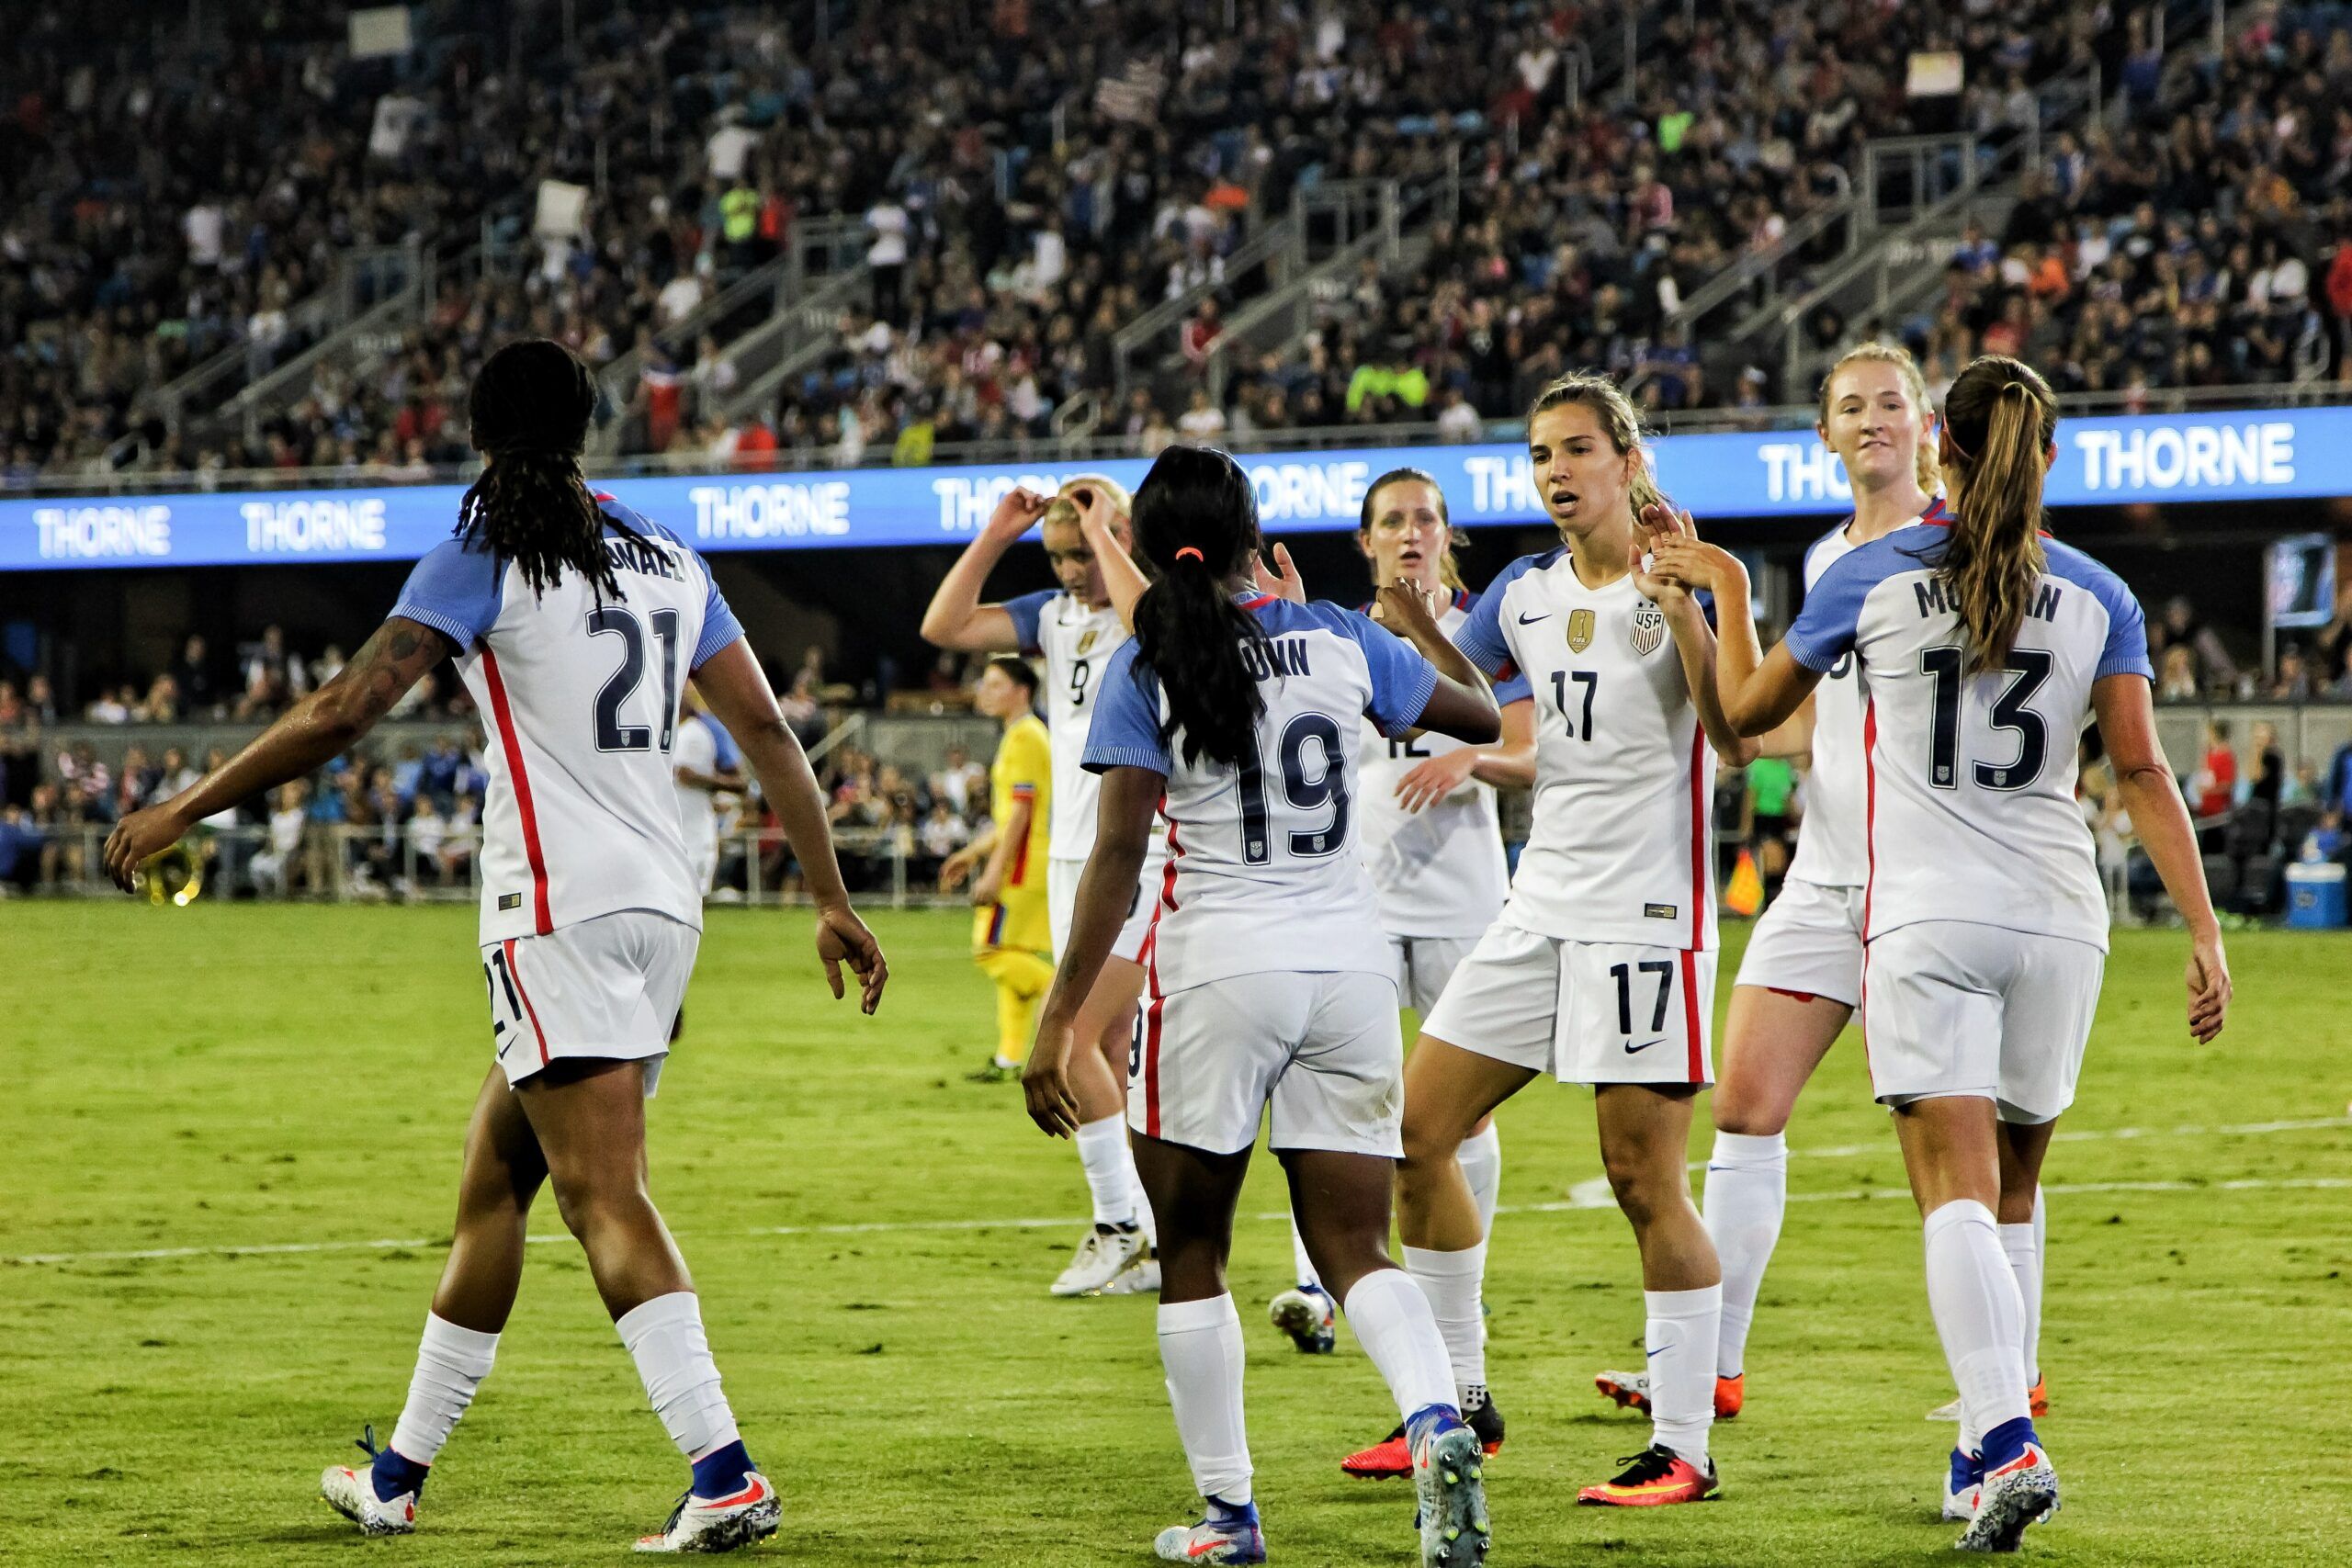 Mondiali calcio femminile, gli USA sono favoriti ma occhio agli upsets